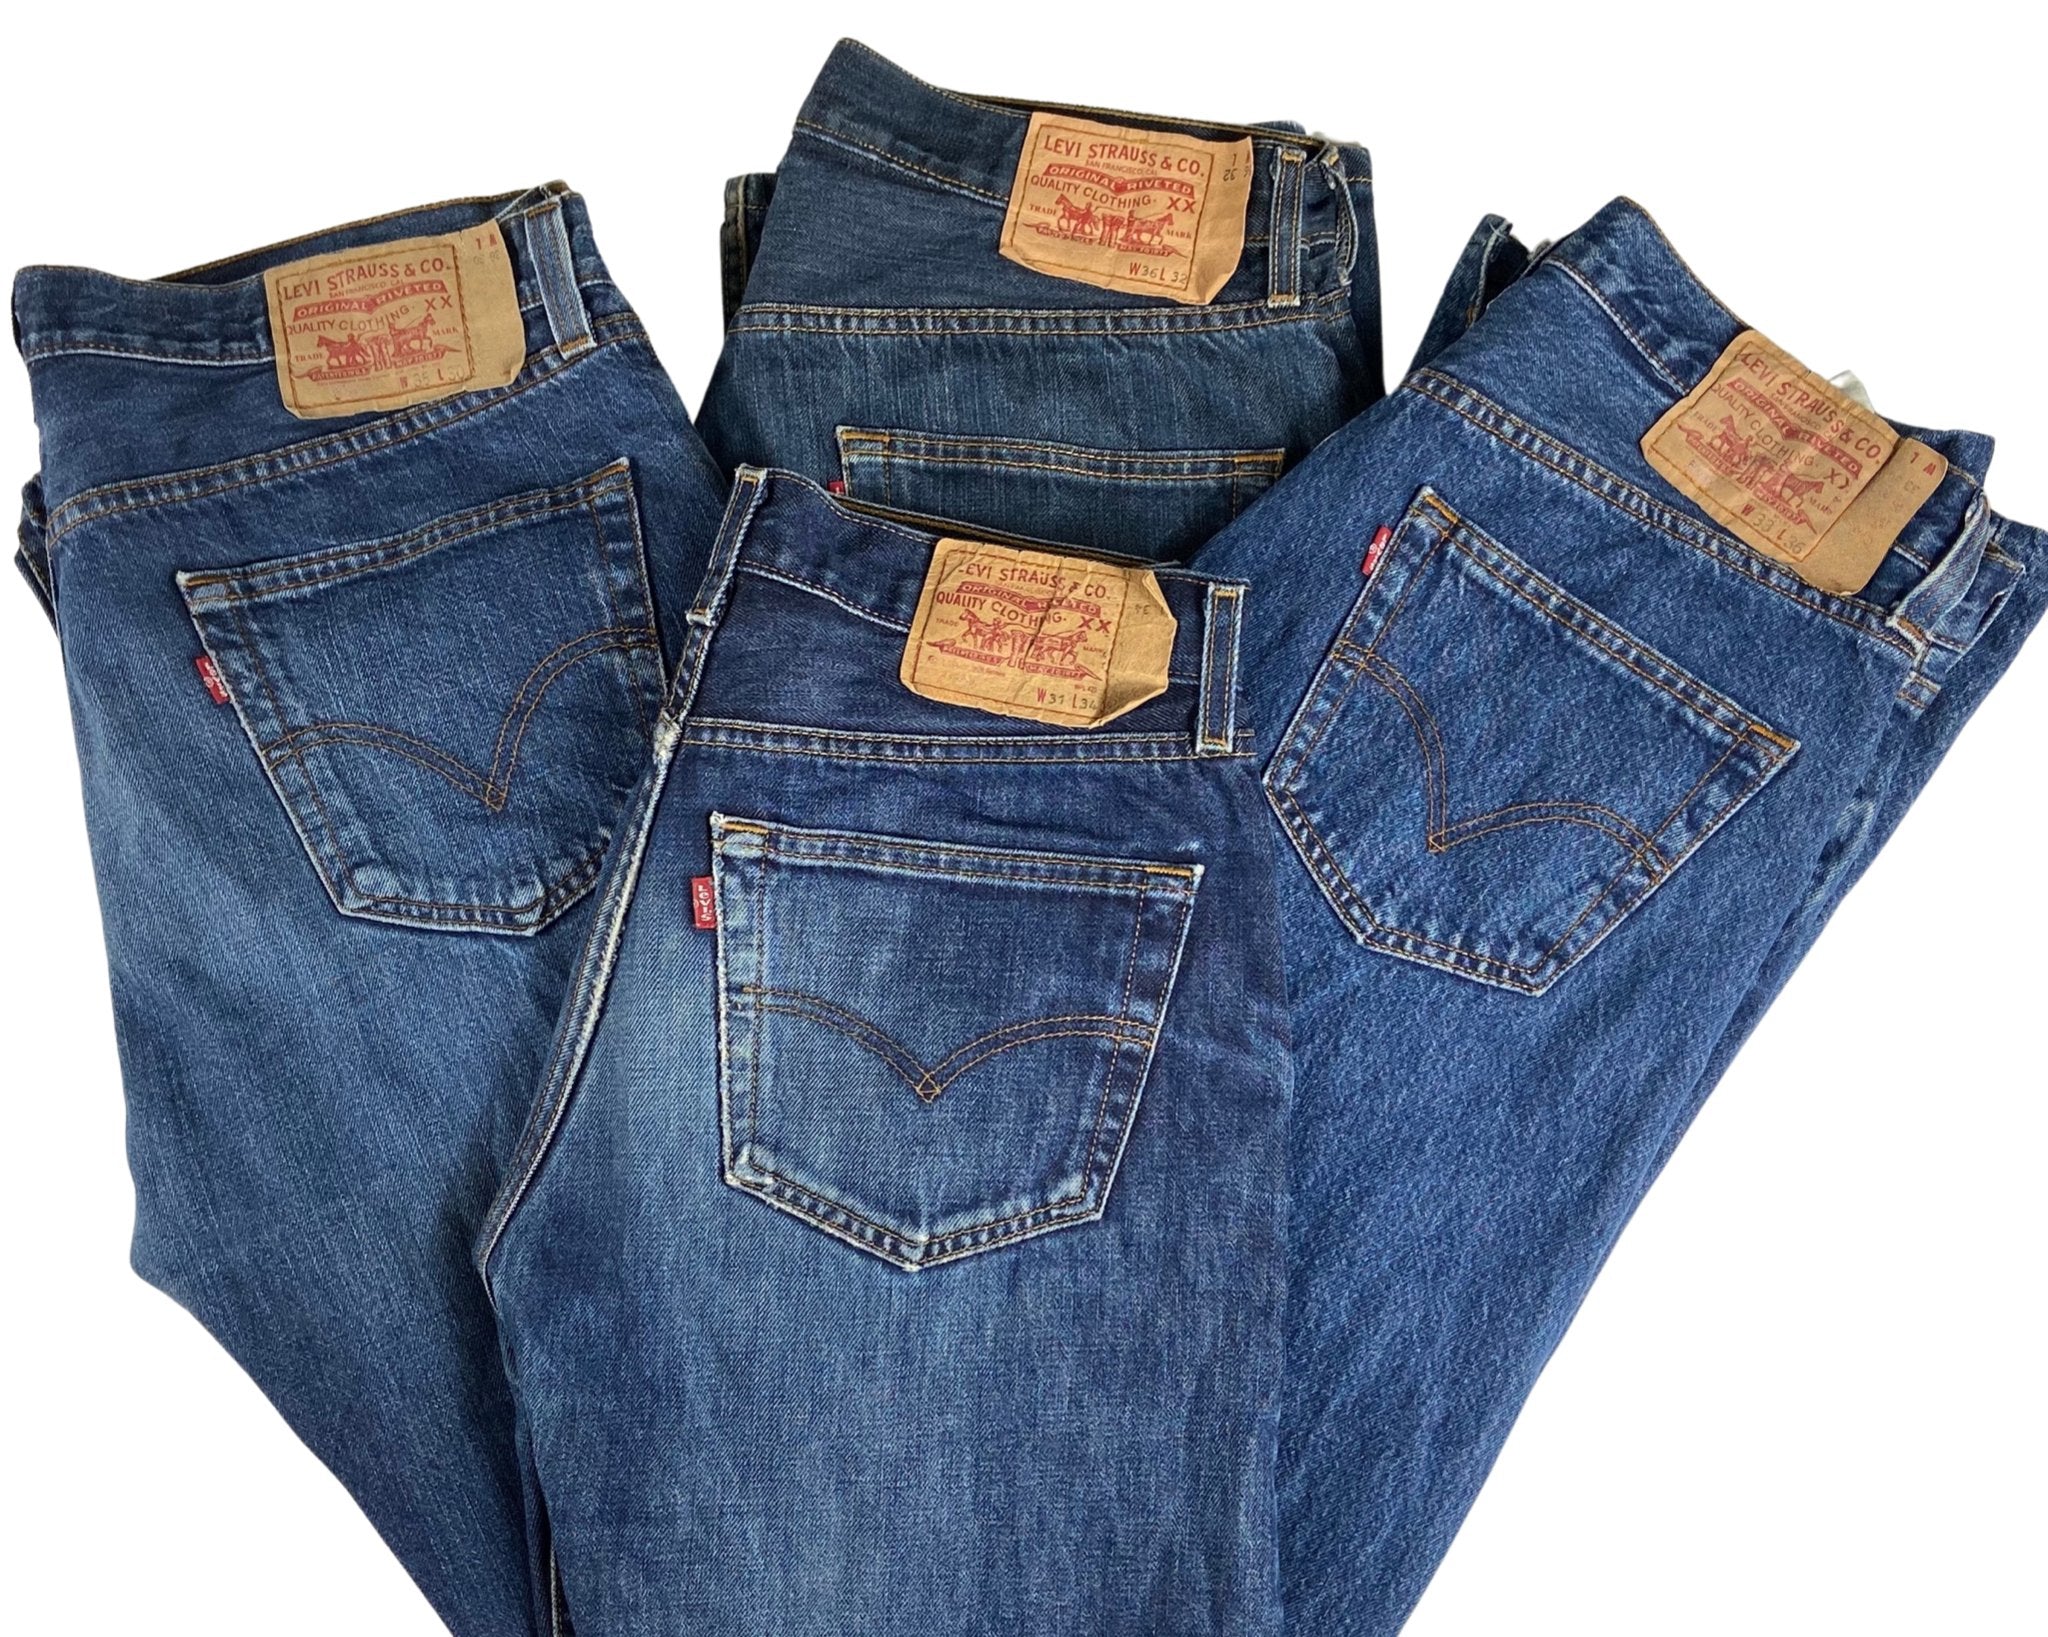 Vintage Levi's Classic Blue Jeans - Waist 36 - Length 32 - Vintage Superstore Online